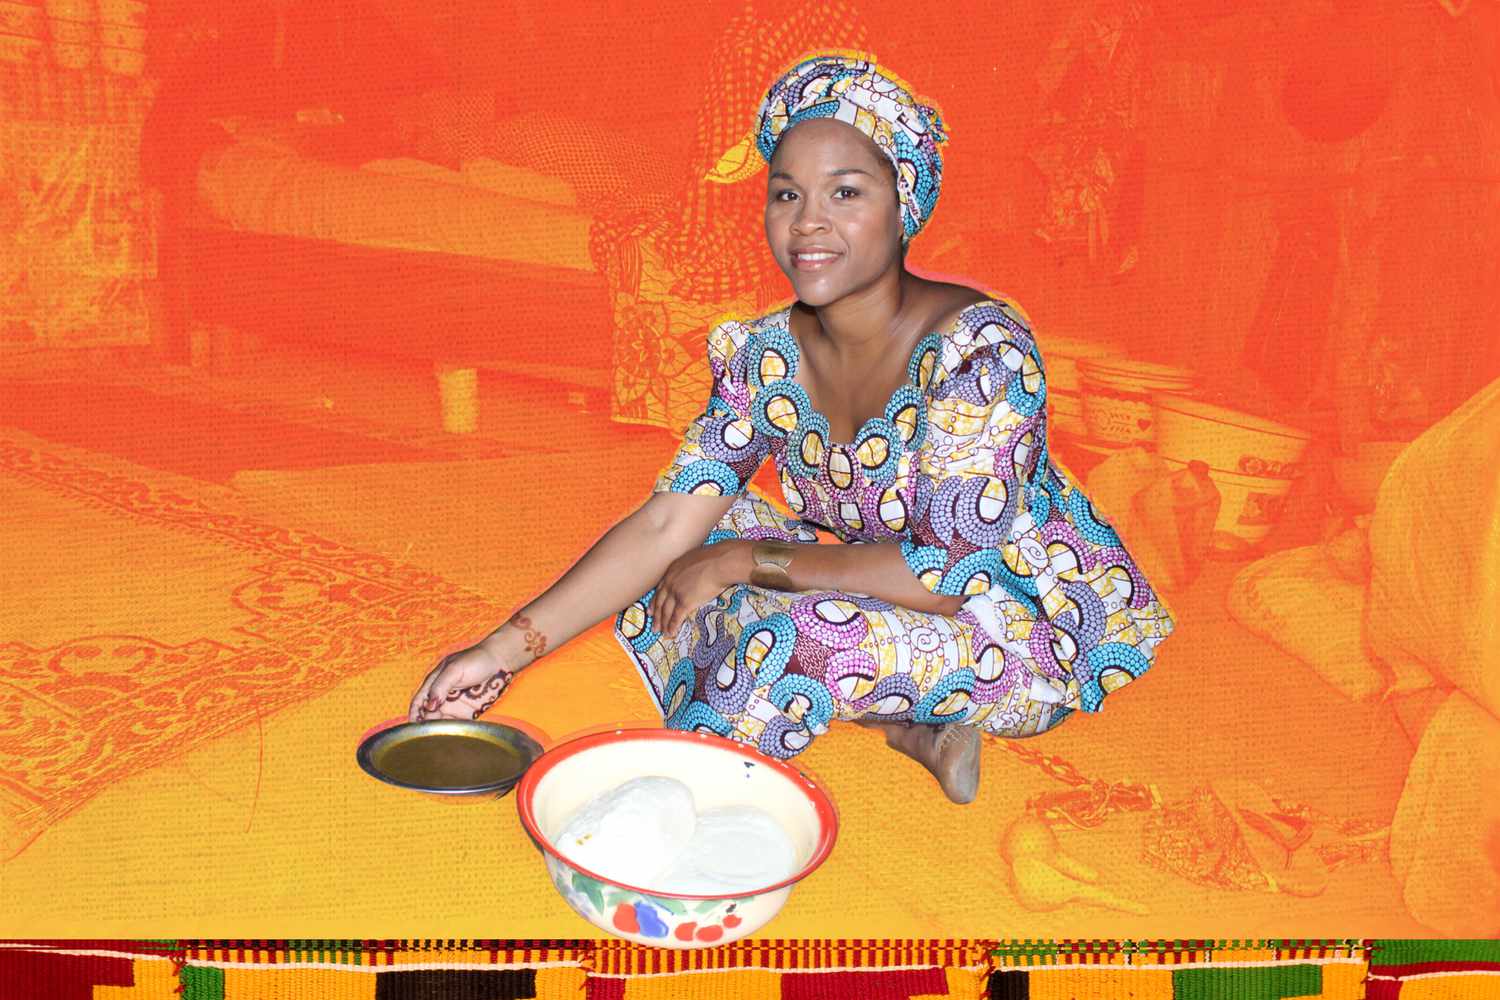 Fotos que estoy comiendo baobab mientras viajo a Nigeria